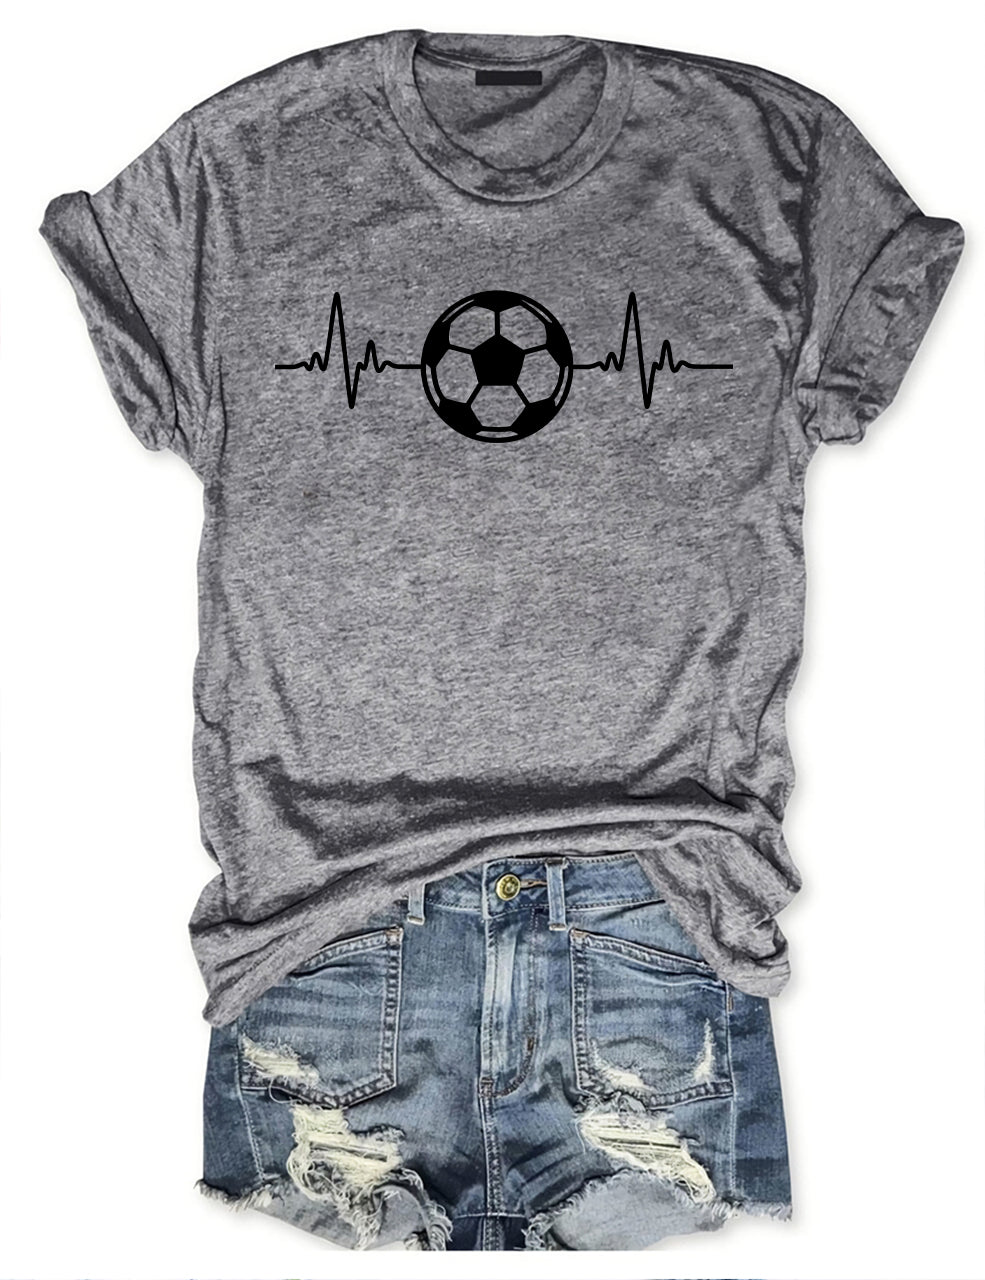 Soccer Lifeline T-shirt